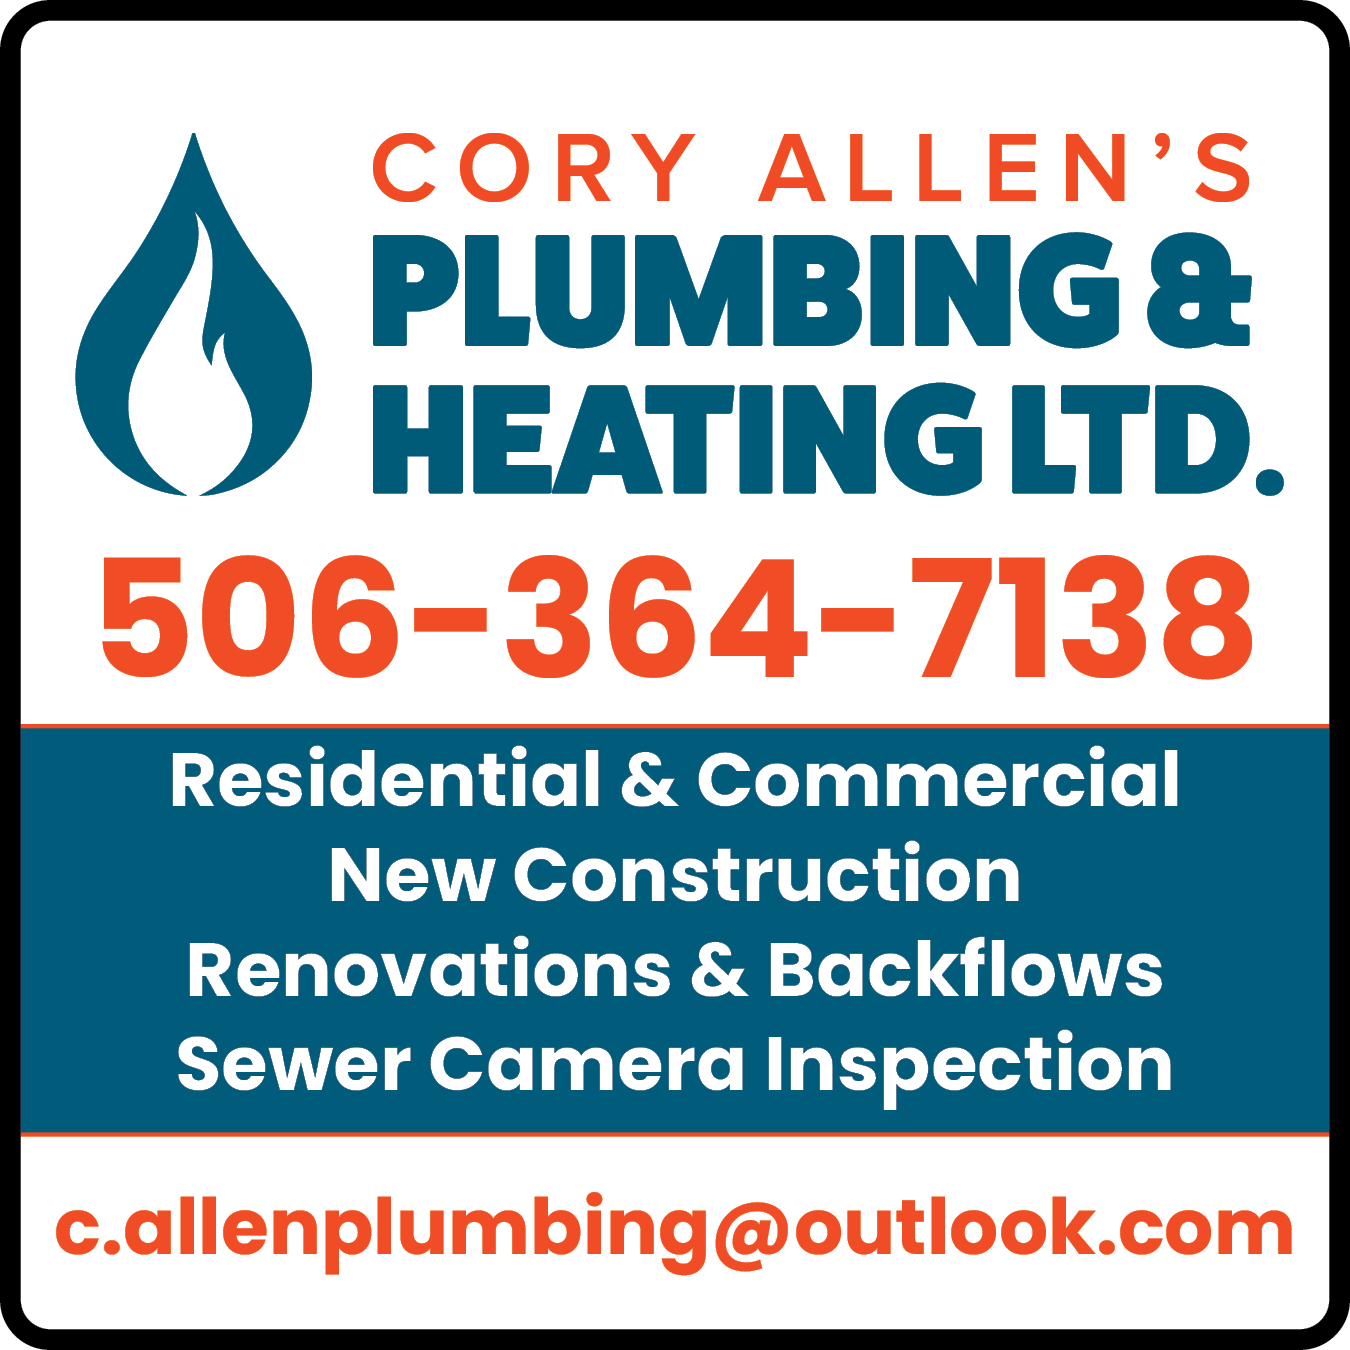 Cory Allen's Plumbing & Heating